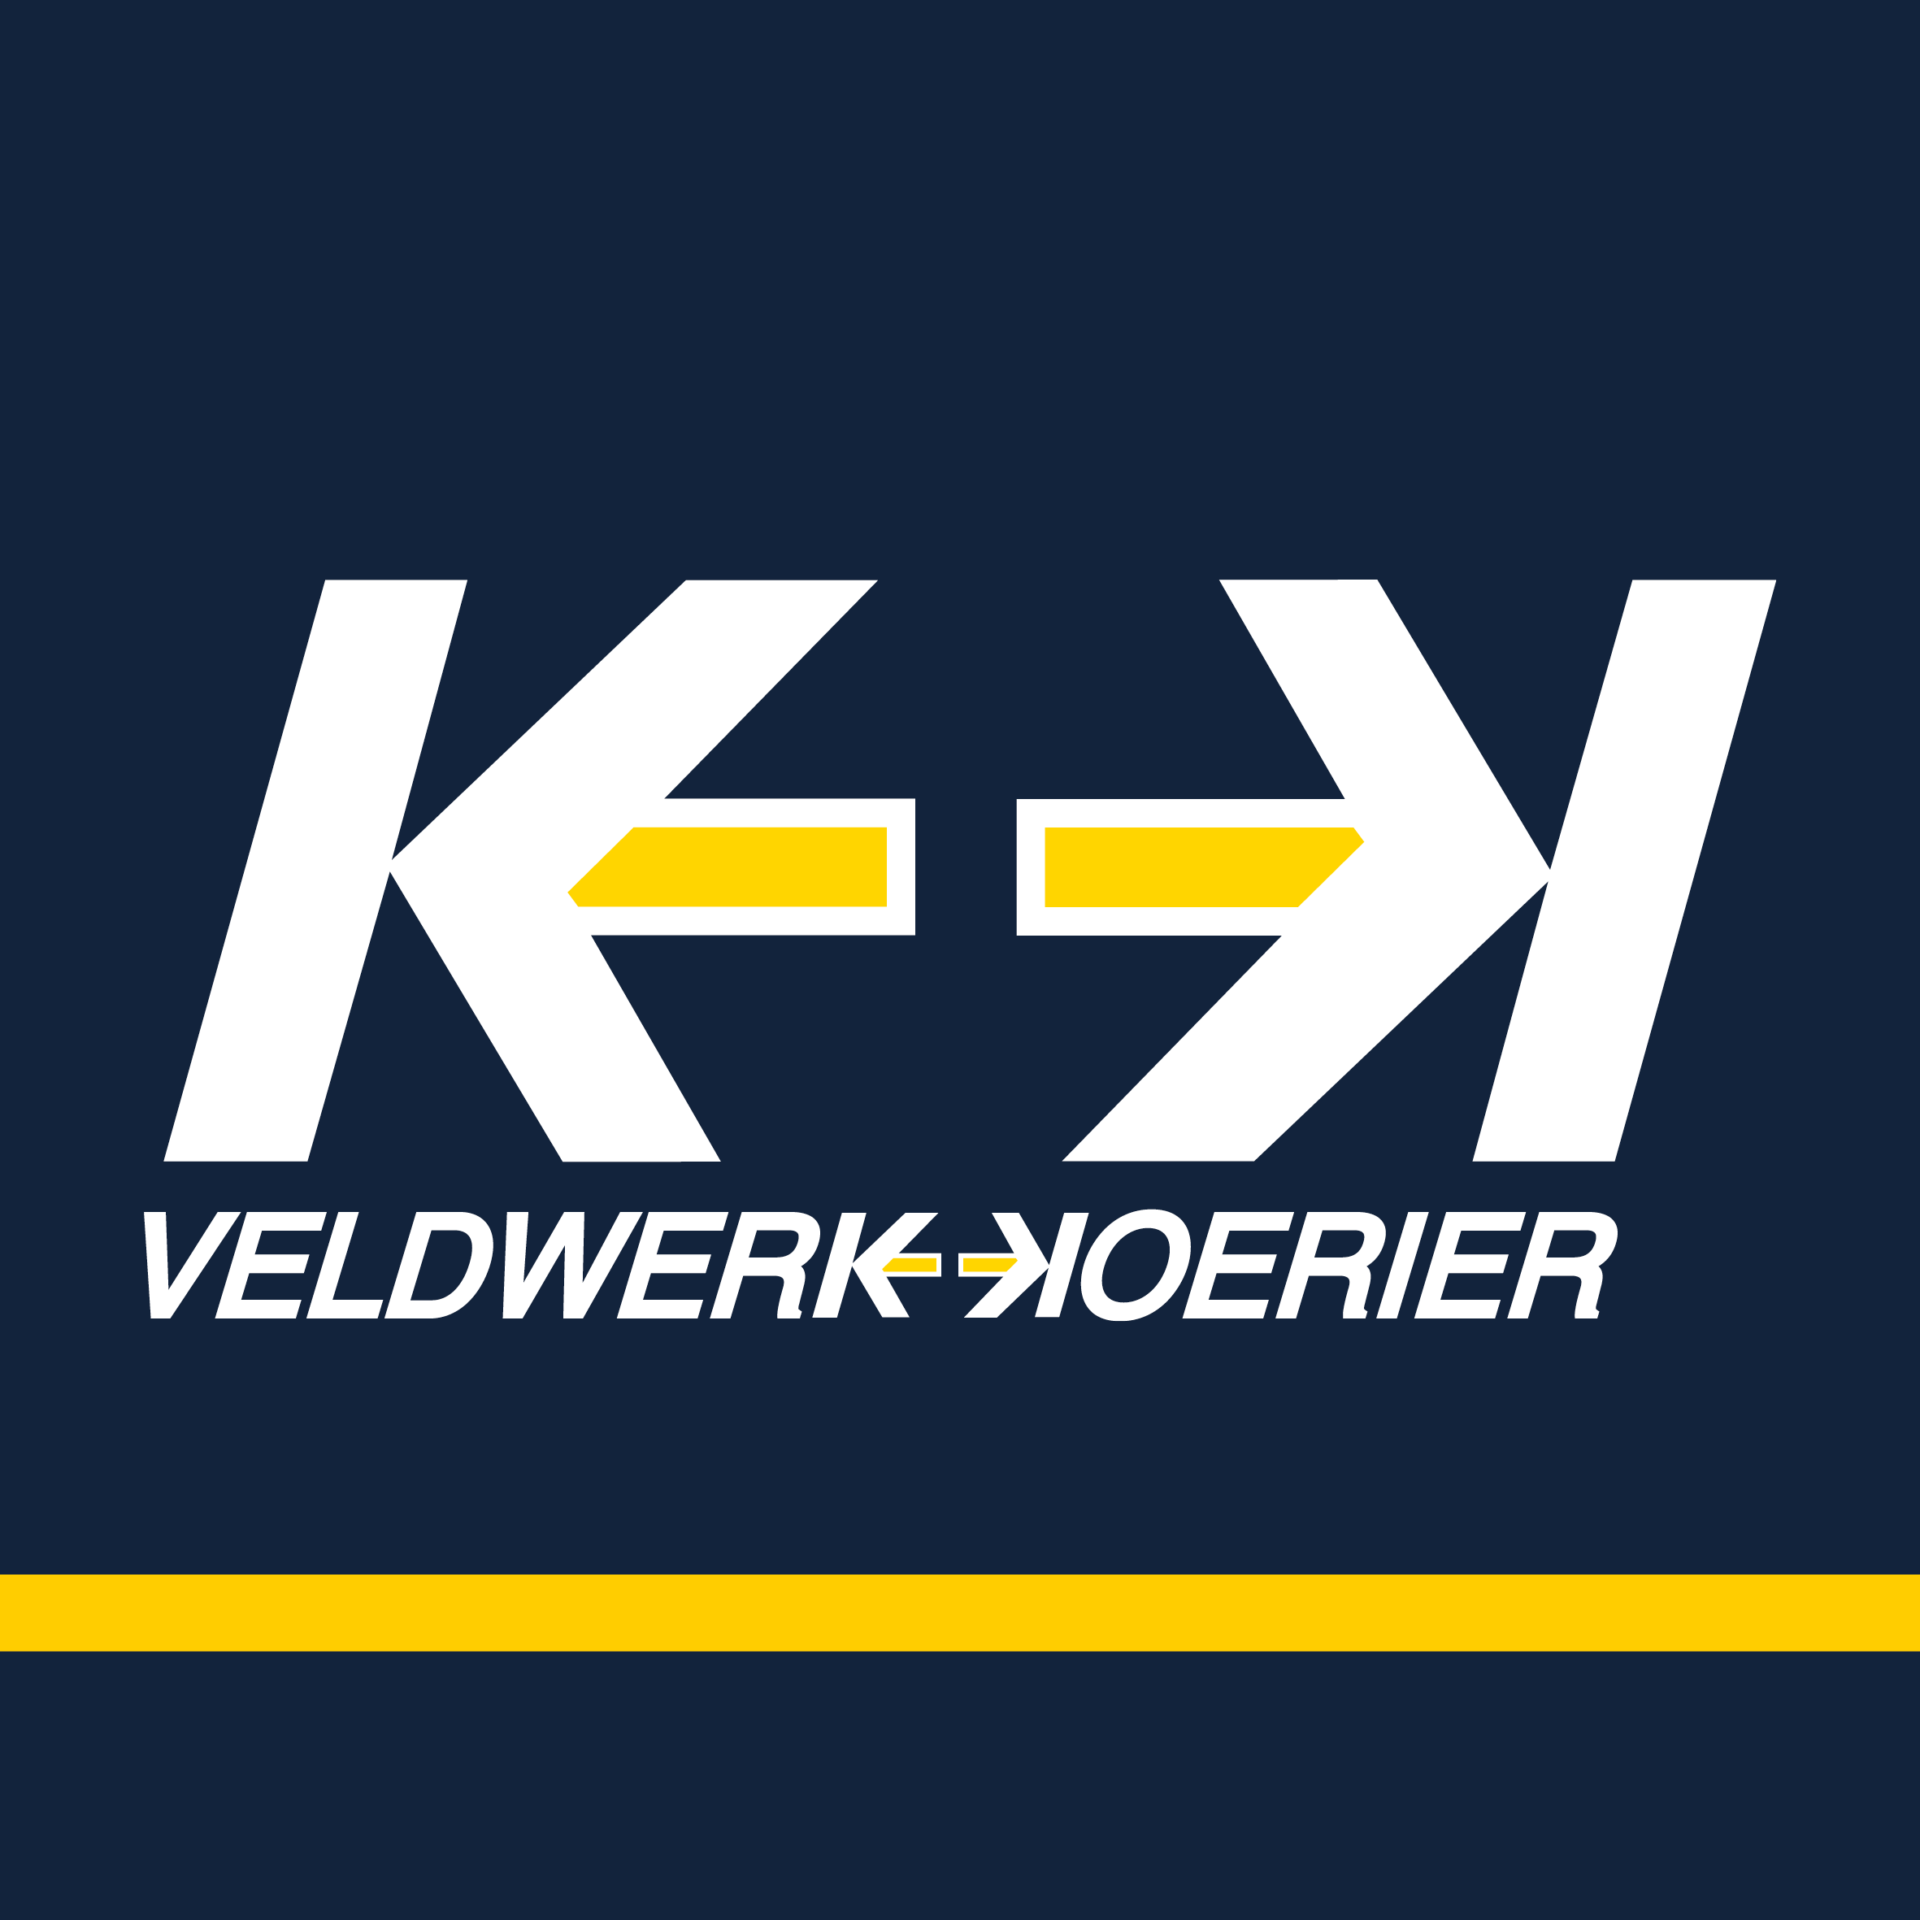 Logo-Veldwerk-Koerier